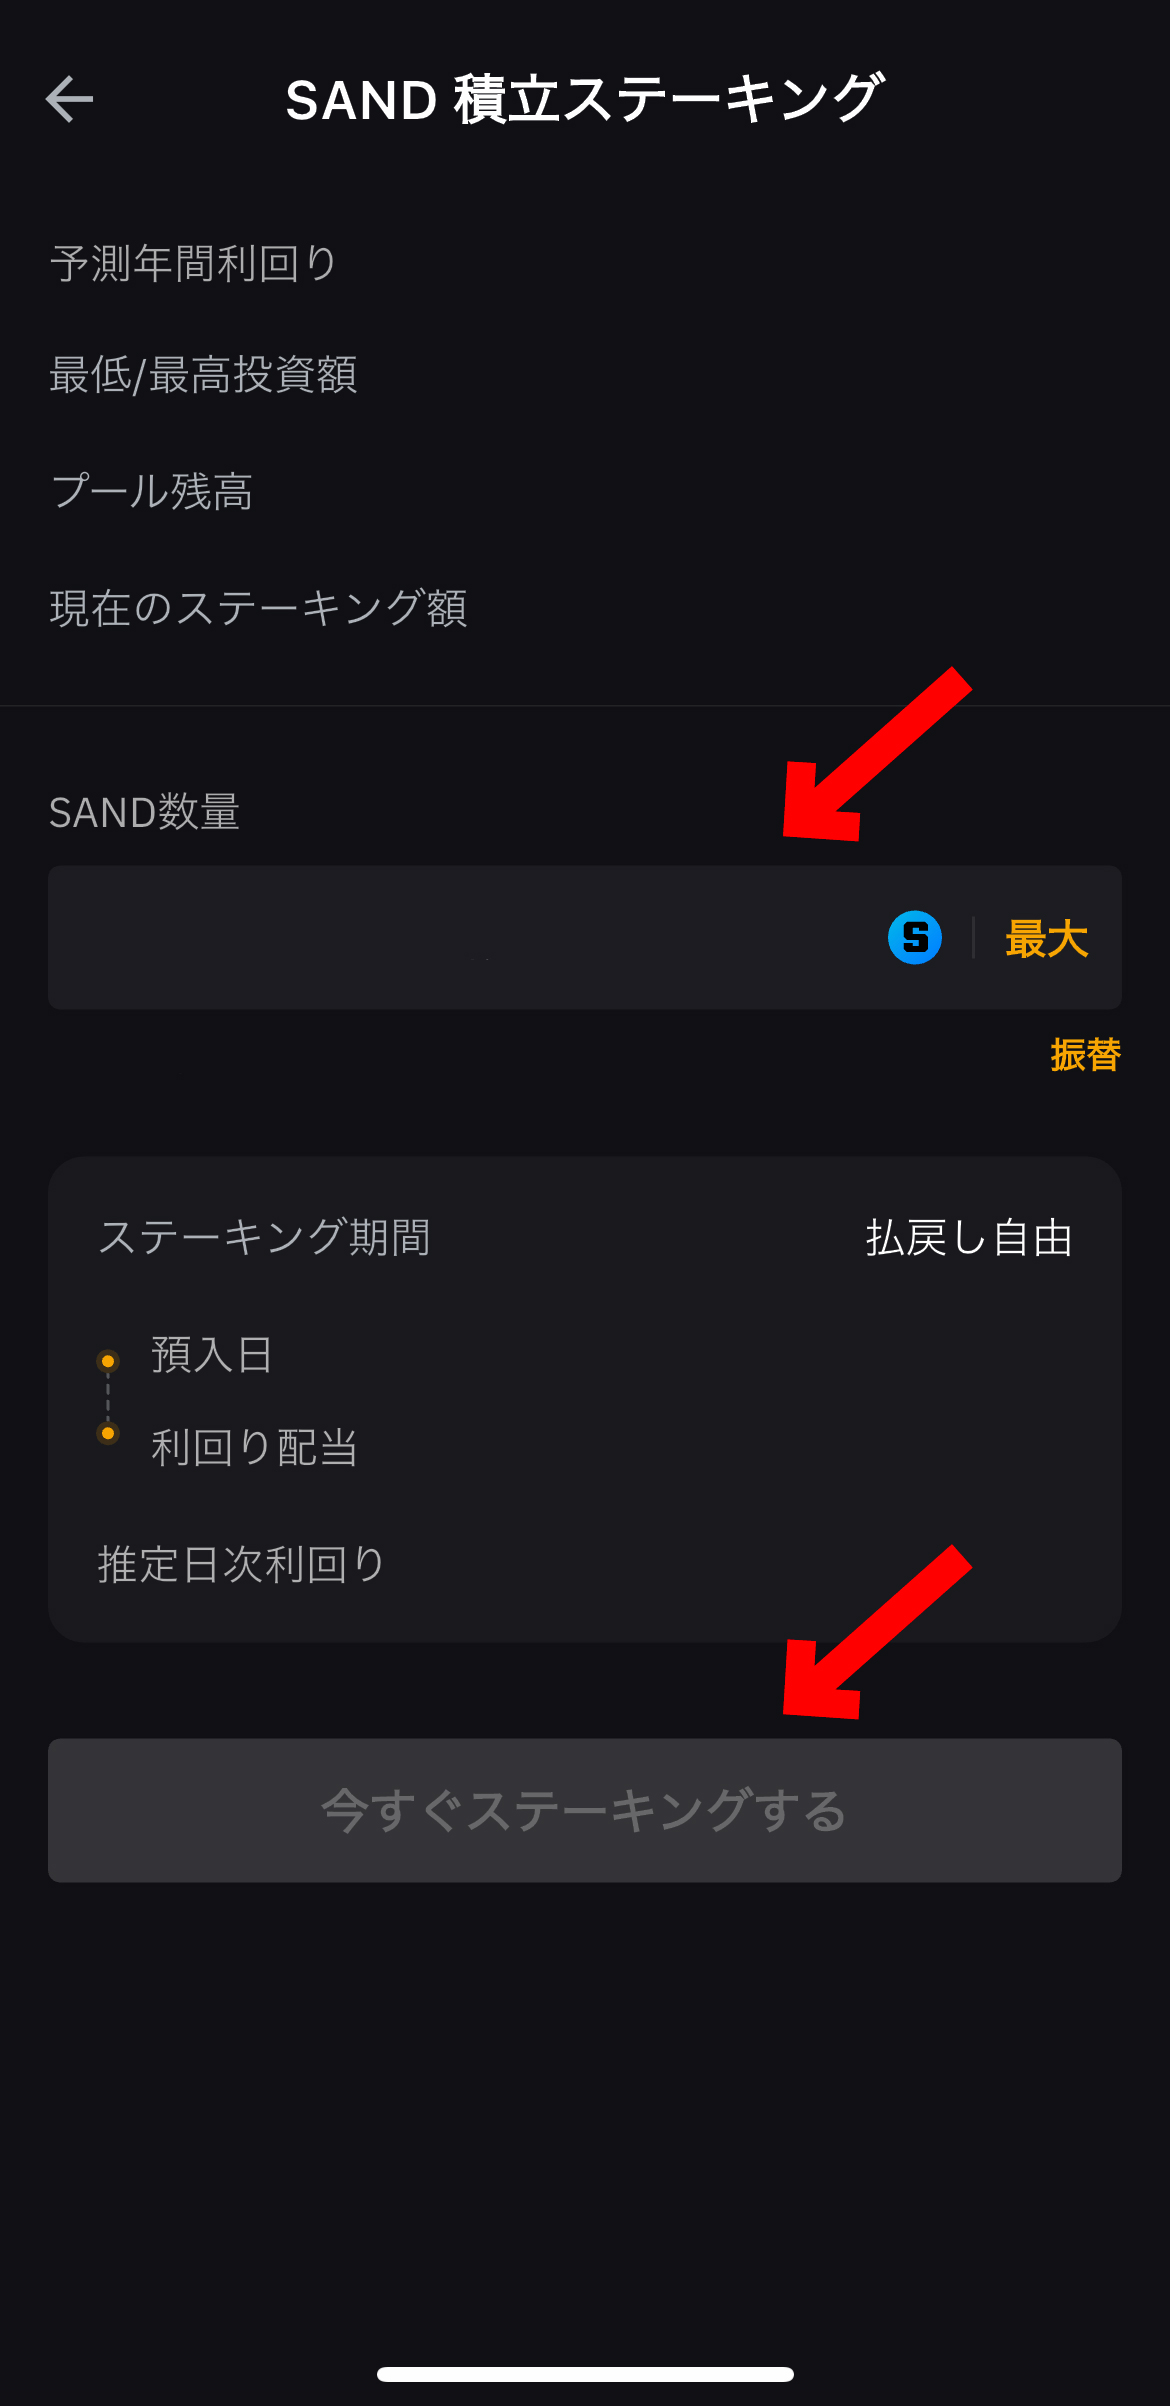 サンドボックスのステーキング方法【Bybit】【バイビット】【SAND】【The Sandbox】【仮想通貨】今すぐステーキングするを選択します